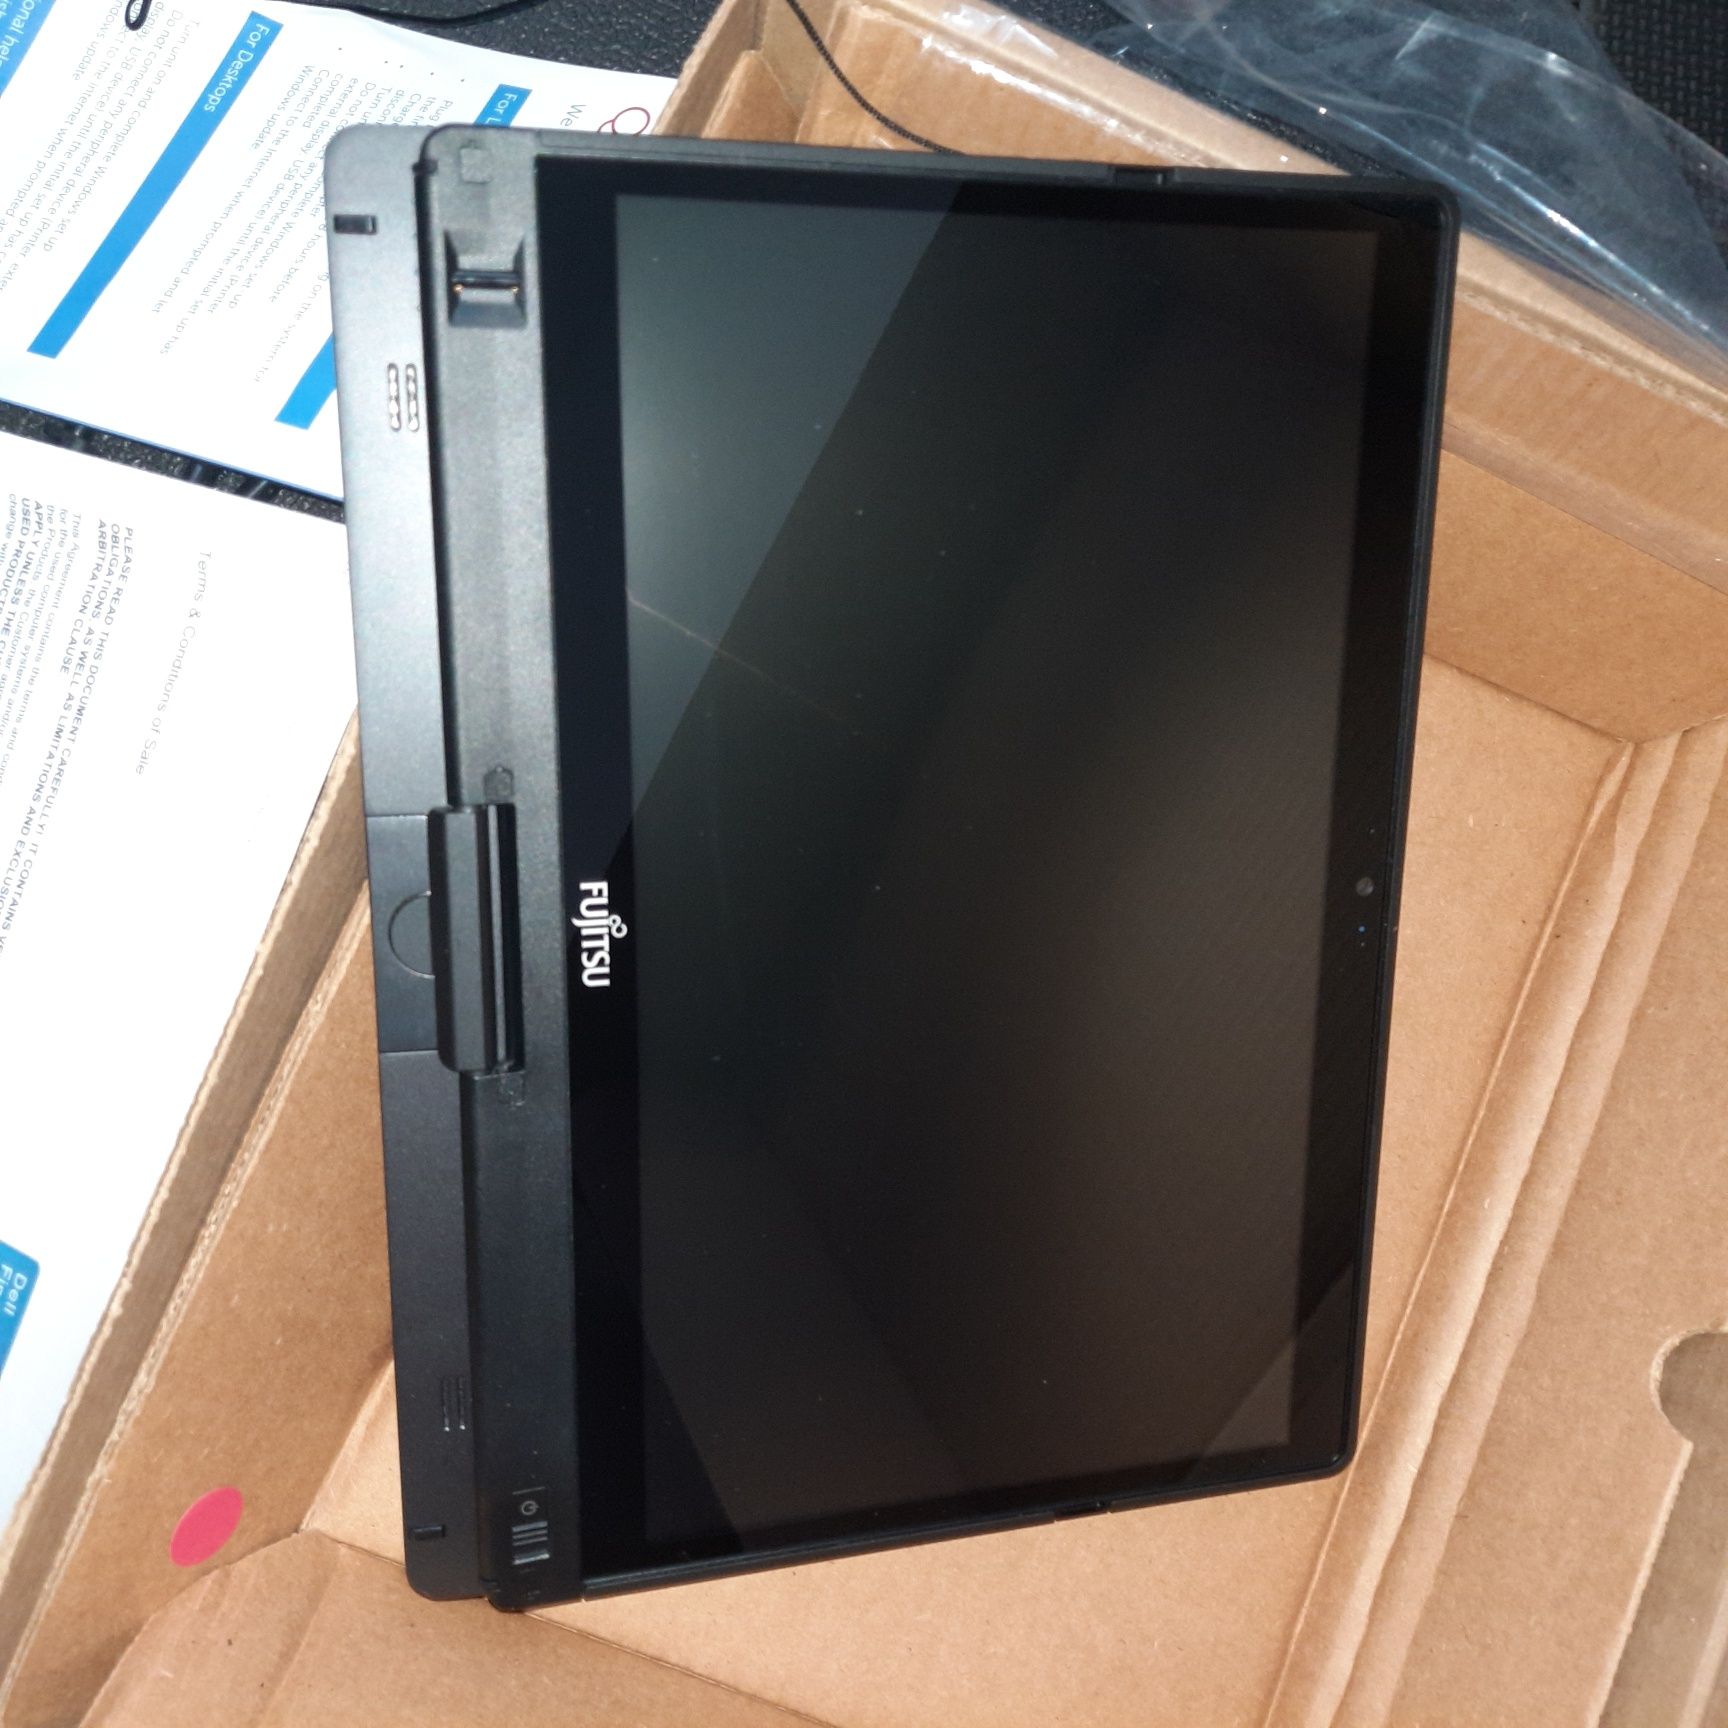 Fujitsu Lifebook t937 ca nou, 2 in1 ca tableta pentru cunoscatori